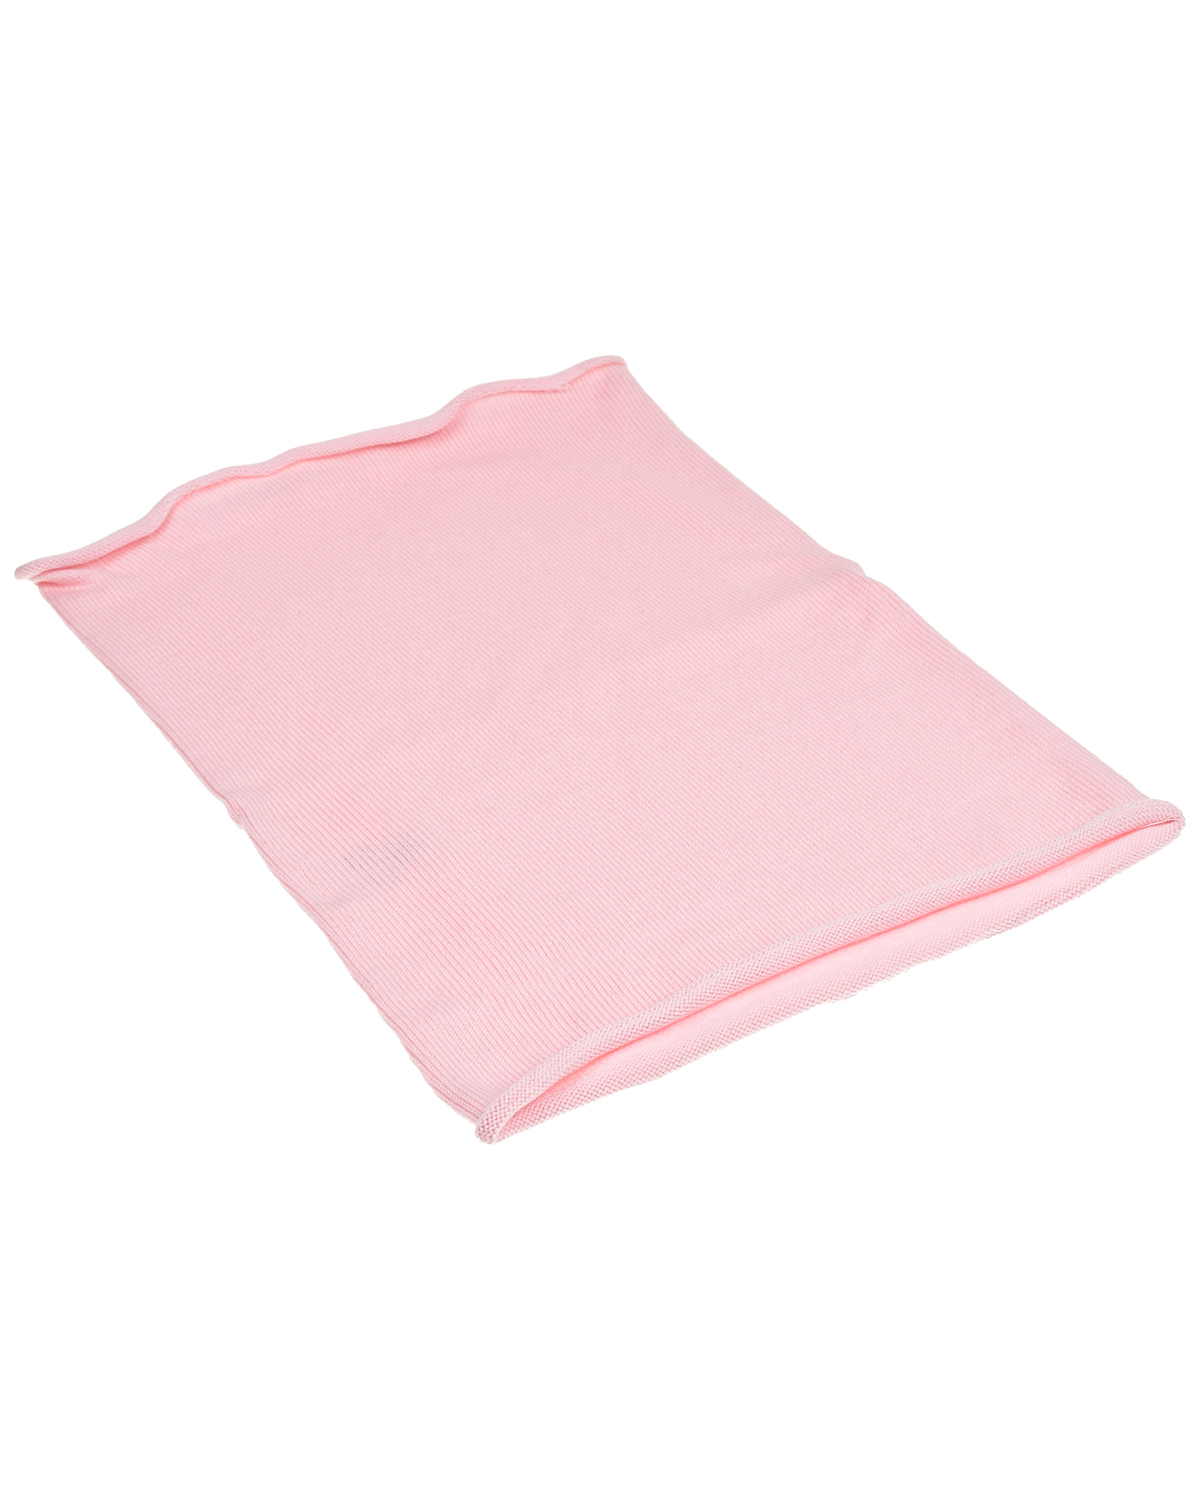 Розовый шарф-ворот, 30x41 см Norveg детский, размер unica